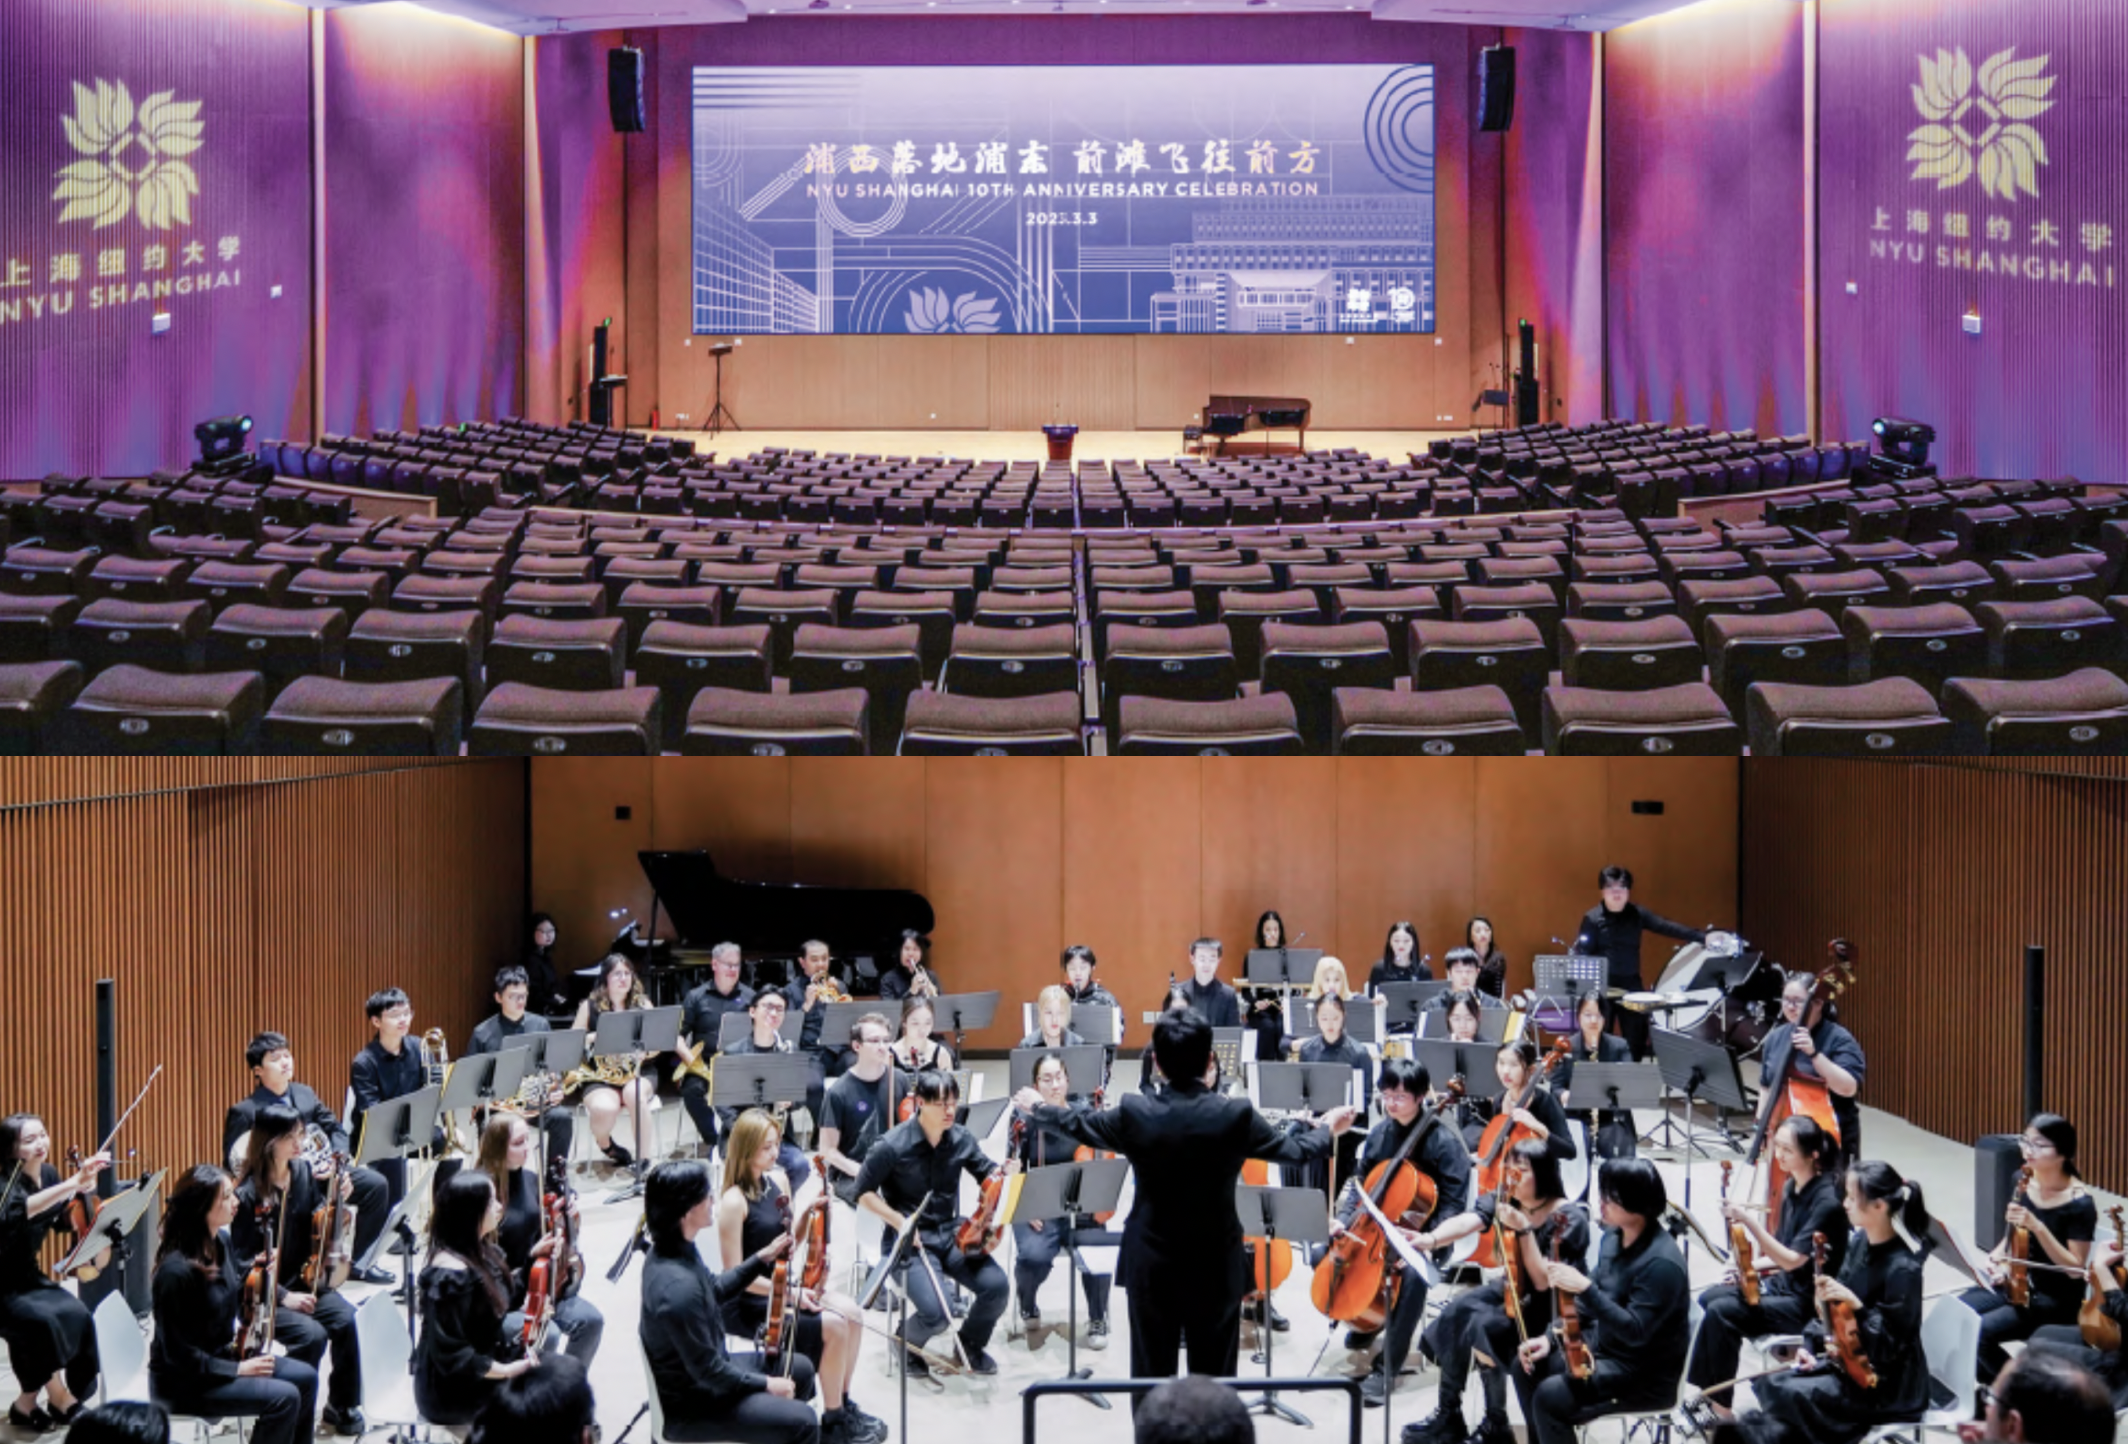 NYU Shanghai Auditorium and Recital Hall